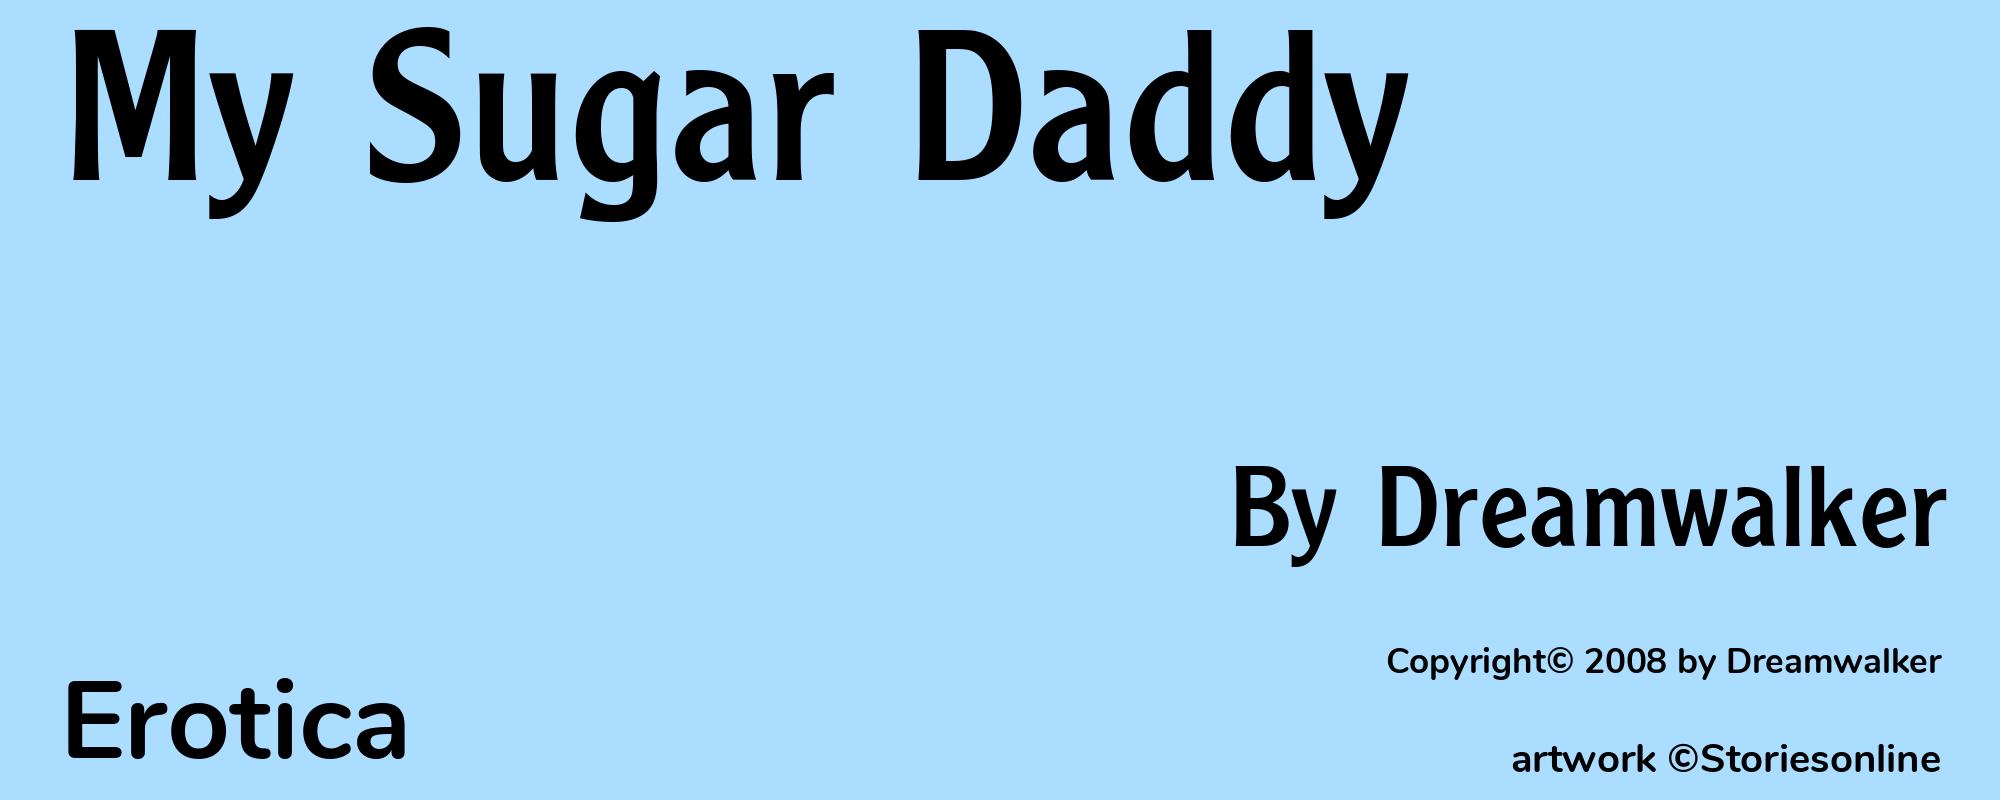 My Sugar Daddy - Cover